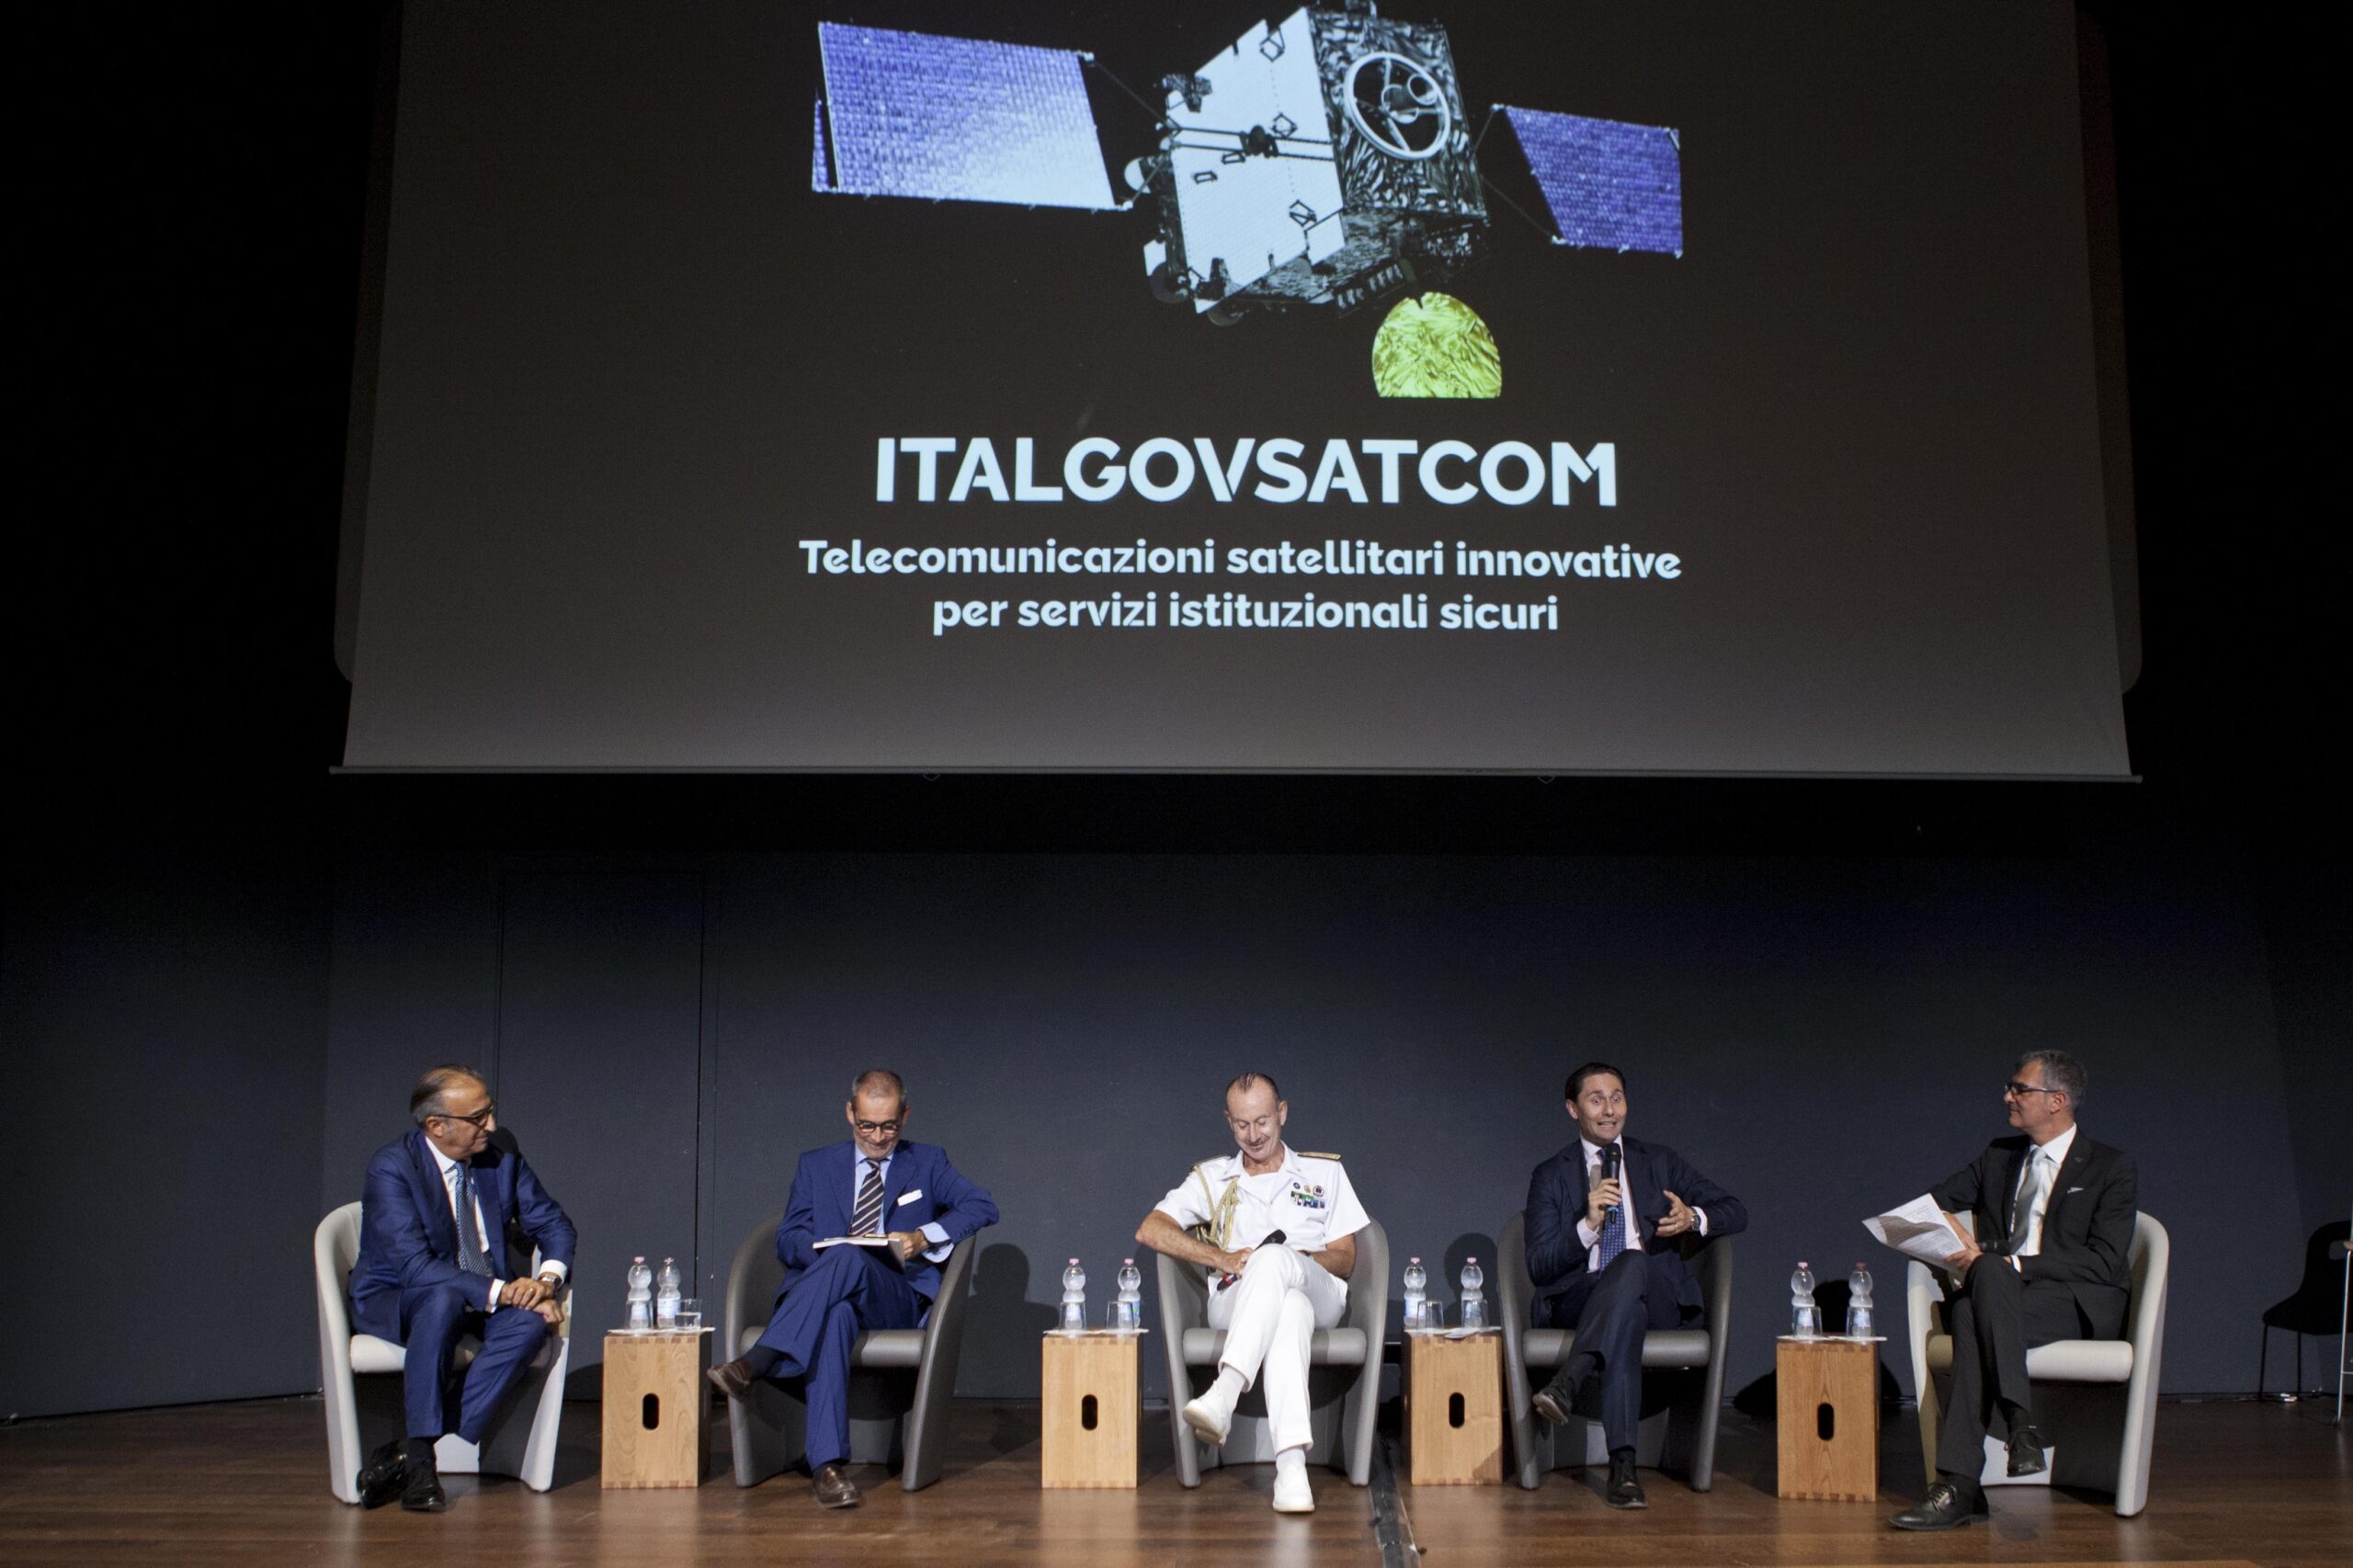 Space Economy, al via la prima fase di Ital-GovSatCom